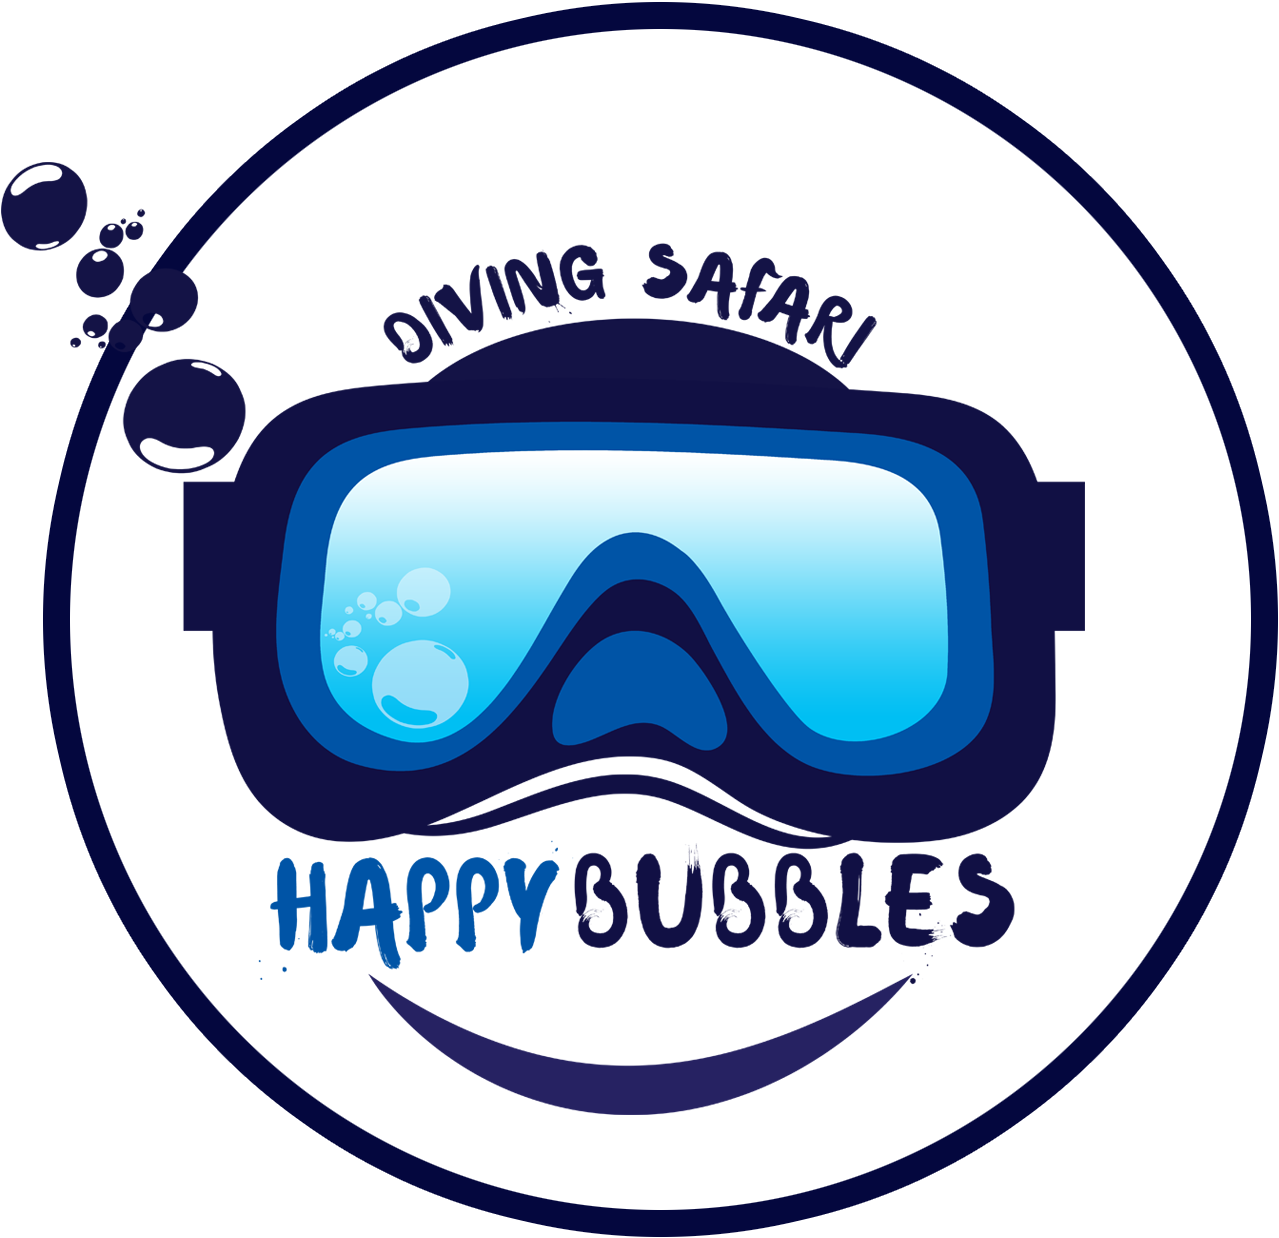 Happy Bubbles Diving Safari Logo PNG